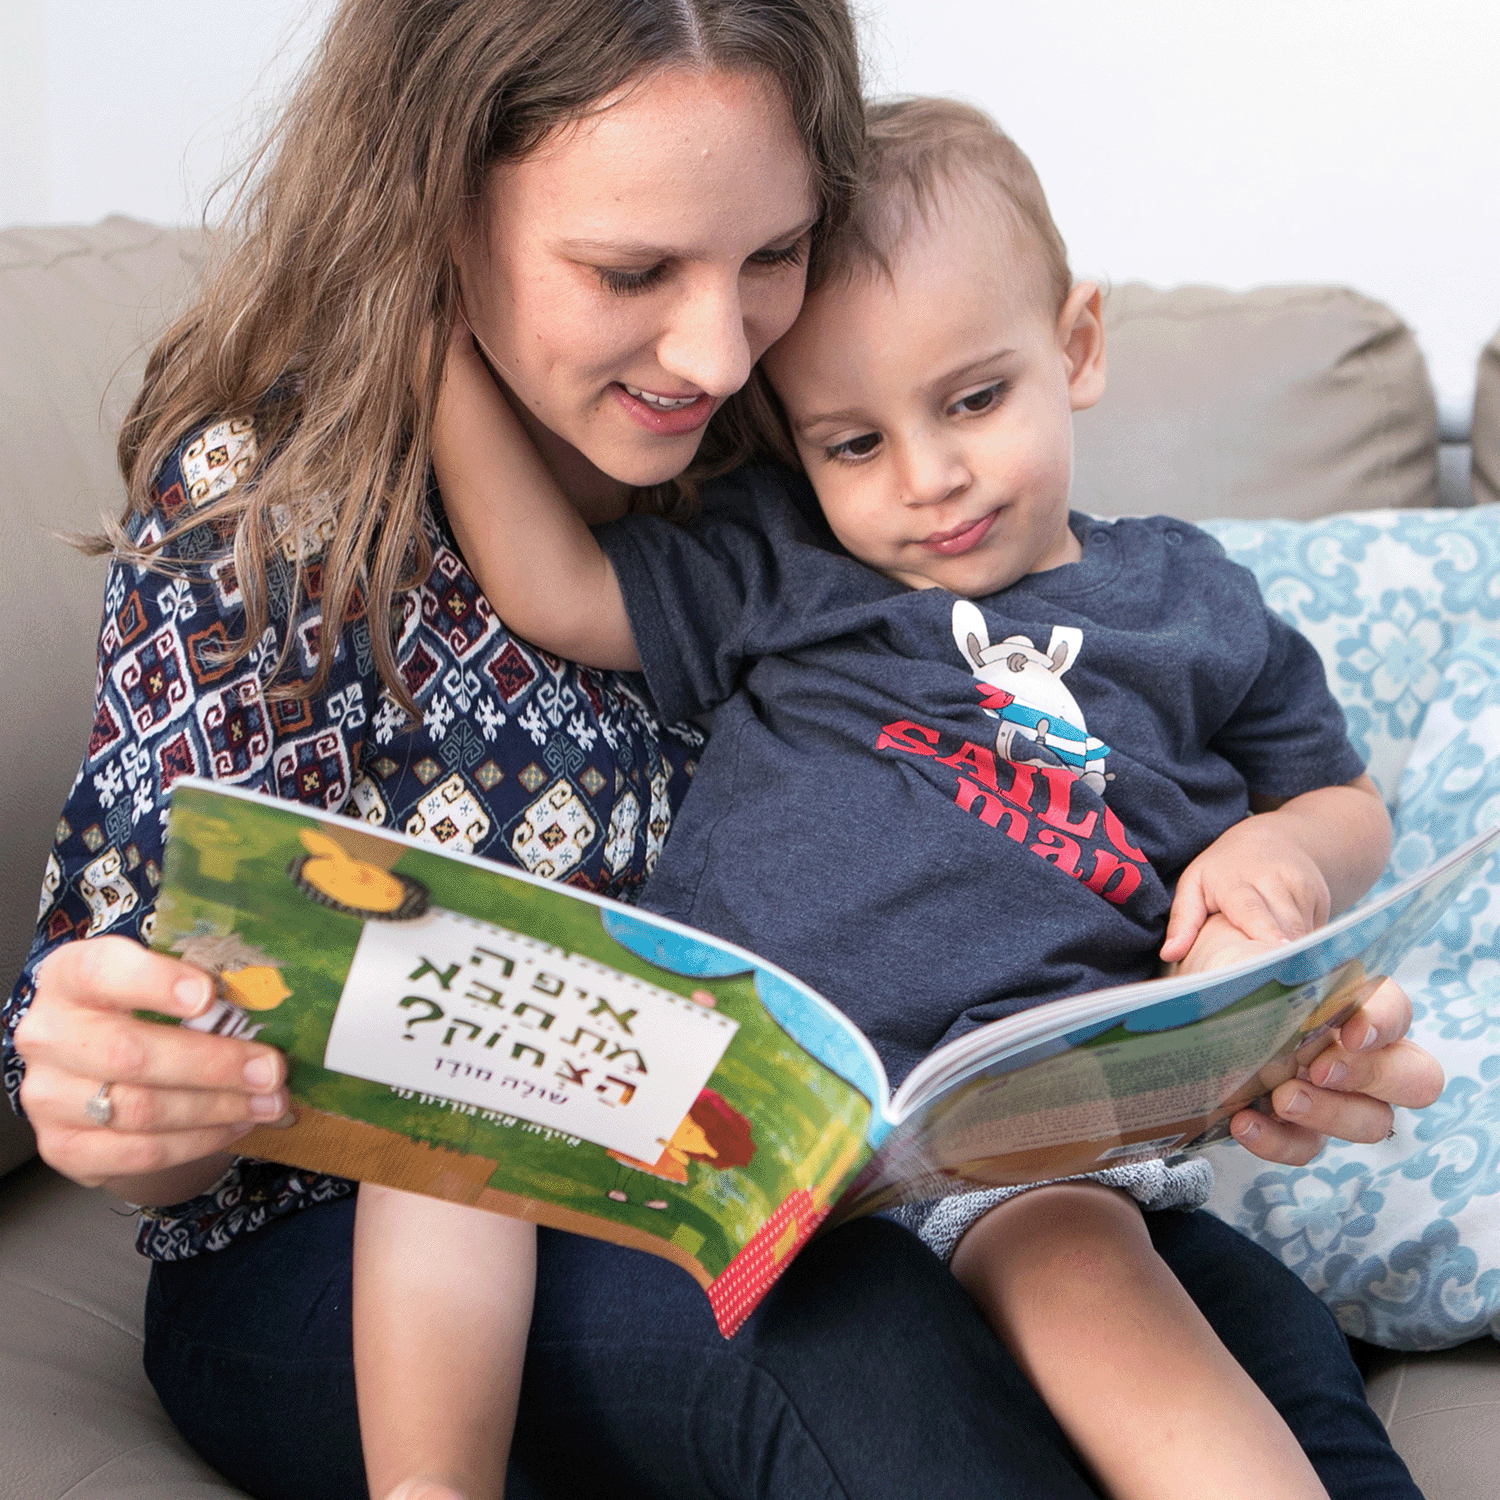 כריכת הספר איך אתם עוזרים לילדיכם כשאתם קוראים ביחד?